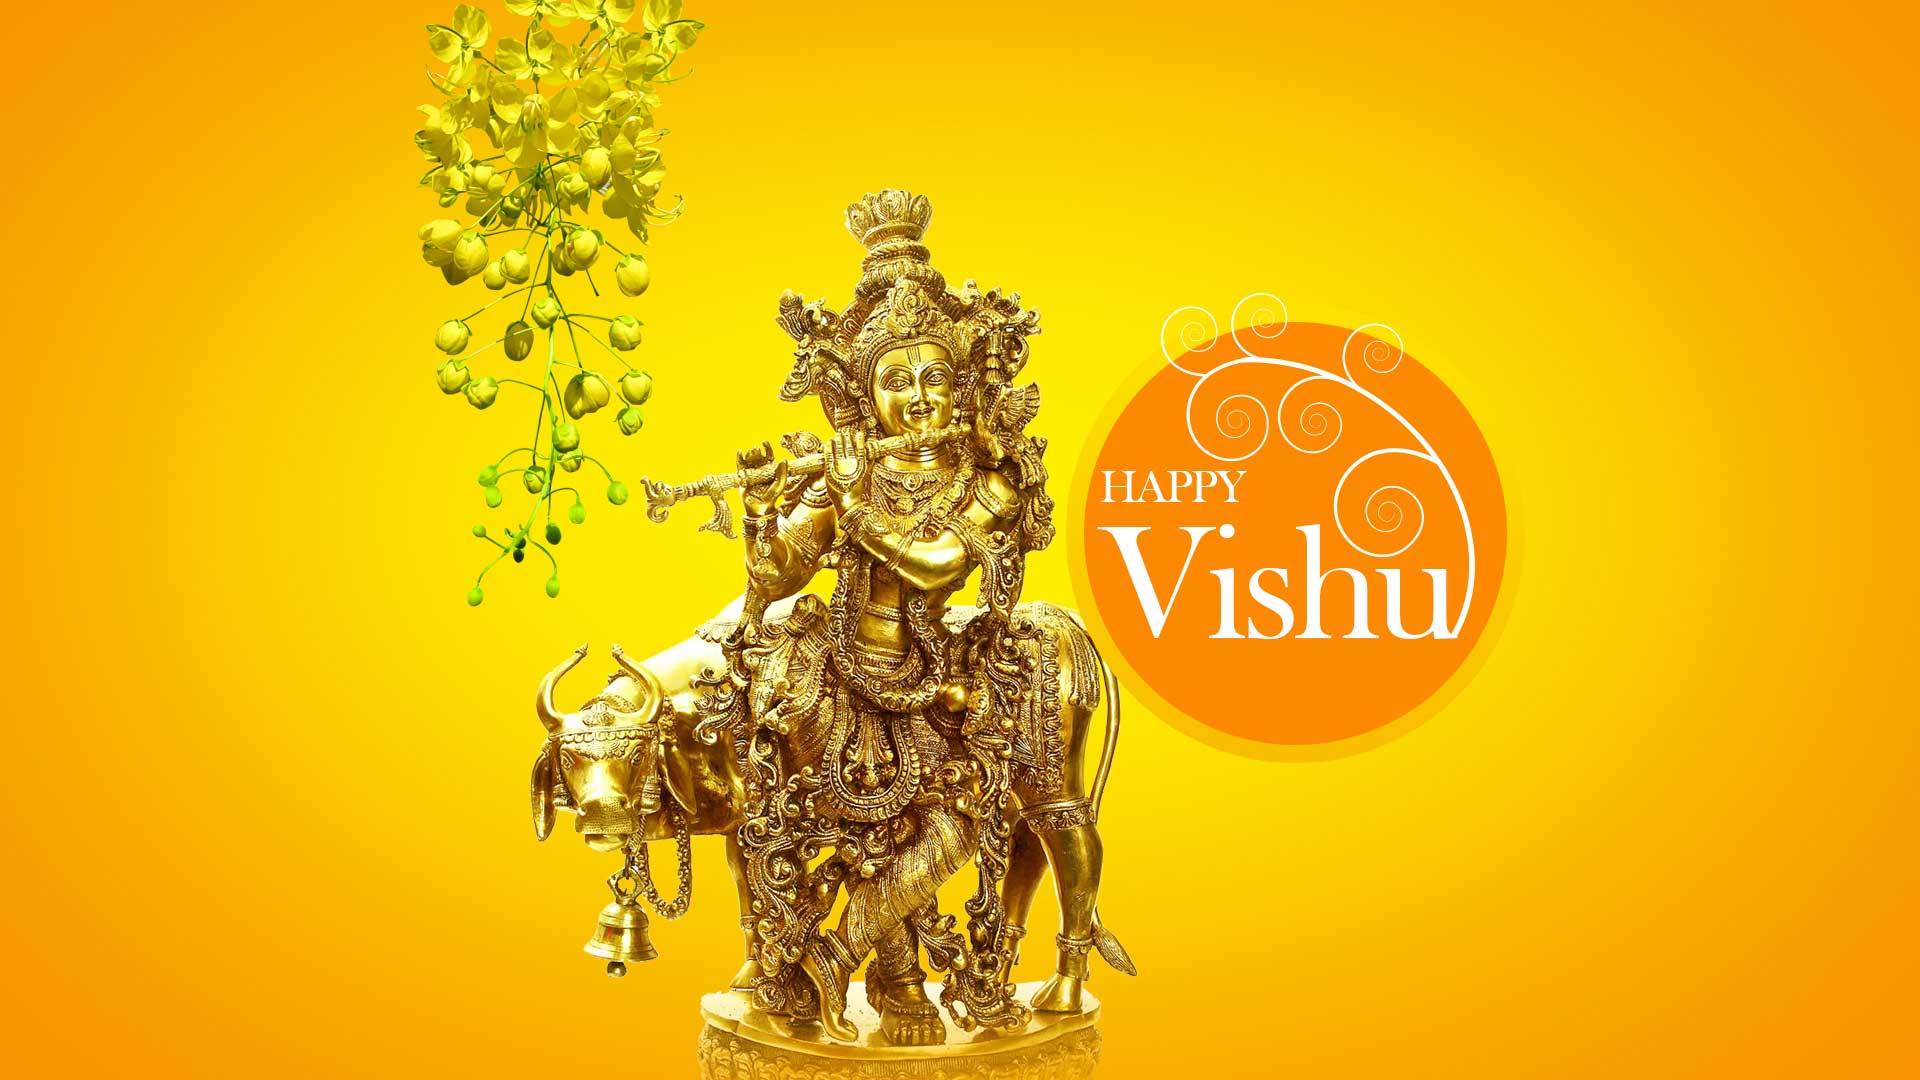 Happy Vishu Wishes Malayalam , HD Wallpaper & Backgrounds